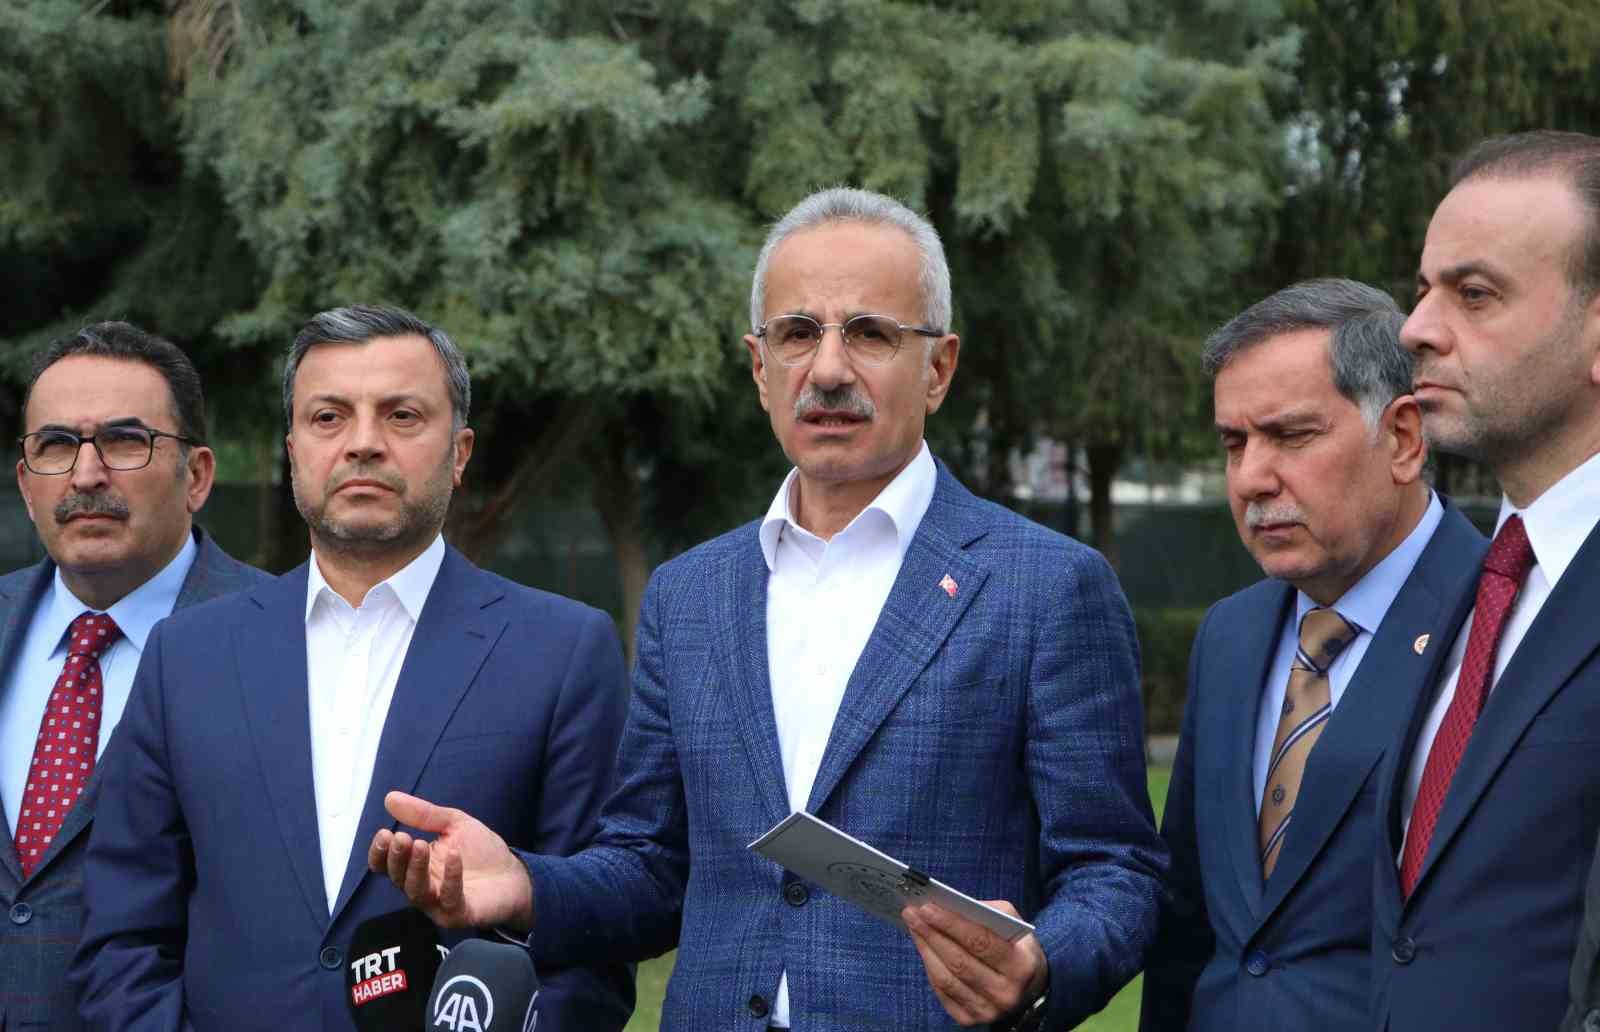 Bakan Uraloğlu: “2027 yılında Mersin-Adana-Gaziantep hızlı tren hattı açılıyor”